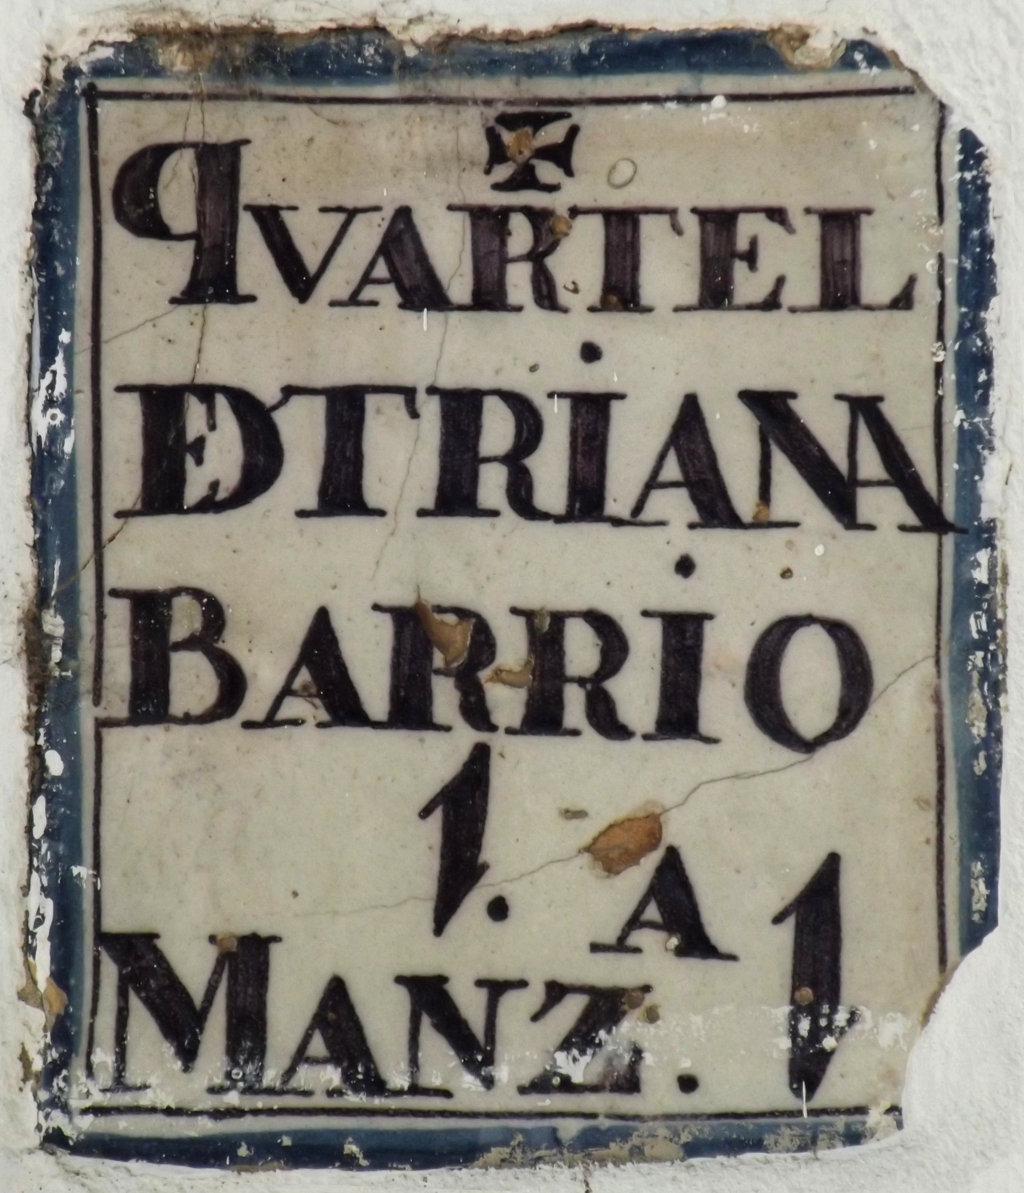 00406. Placa de Olavide. Cuartel-Barrio-Manzana. Fachada del antiguo convento de los Remedios en la Plaza de Cuba. Sevilla.